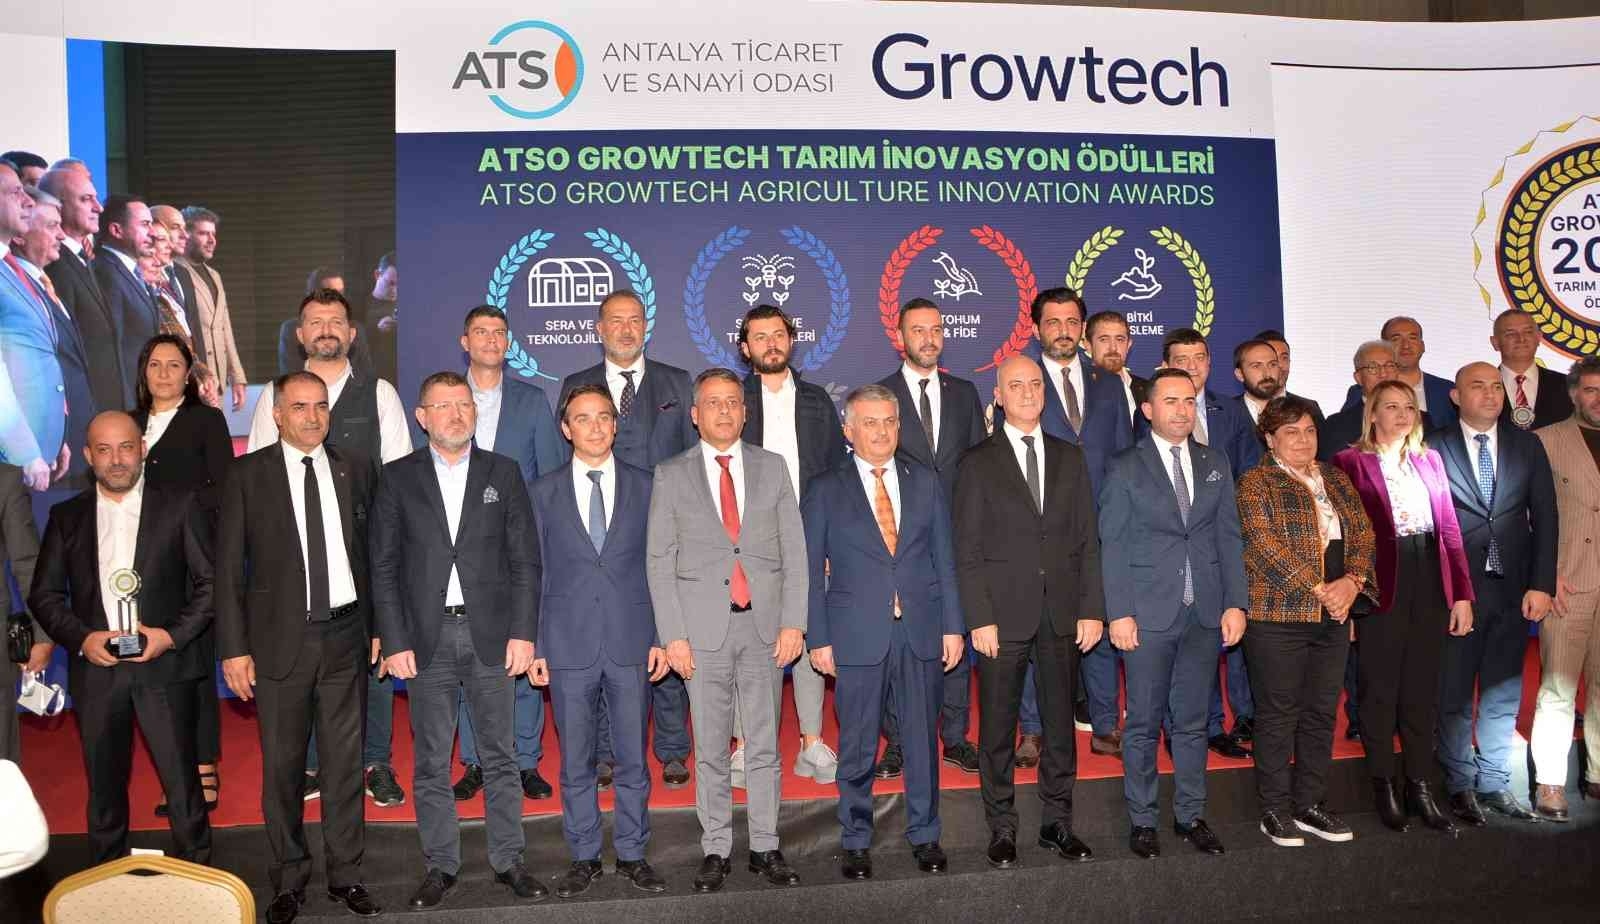 2022/11/atso-growtech-tarim-inovasyon-odulleri-sahiplerini-buldu-20221125AW76-1.jpg